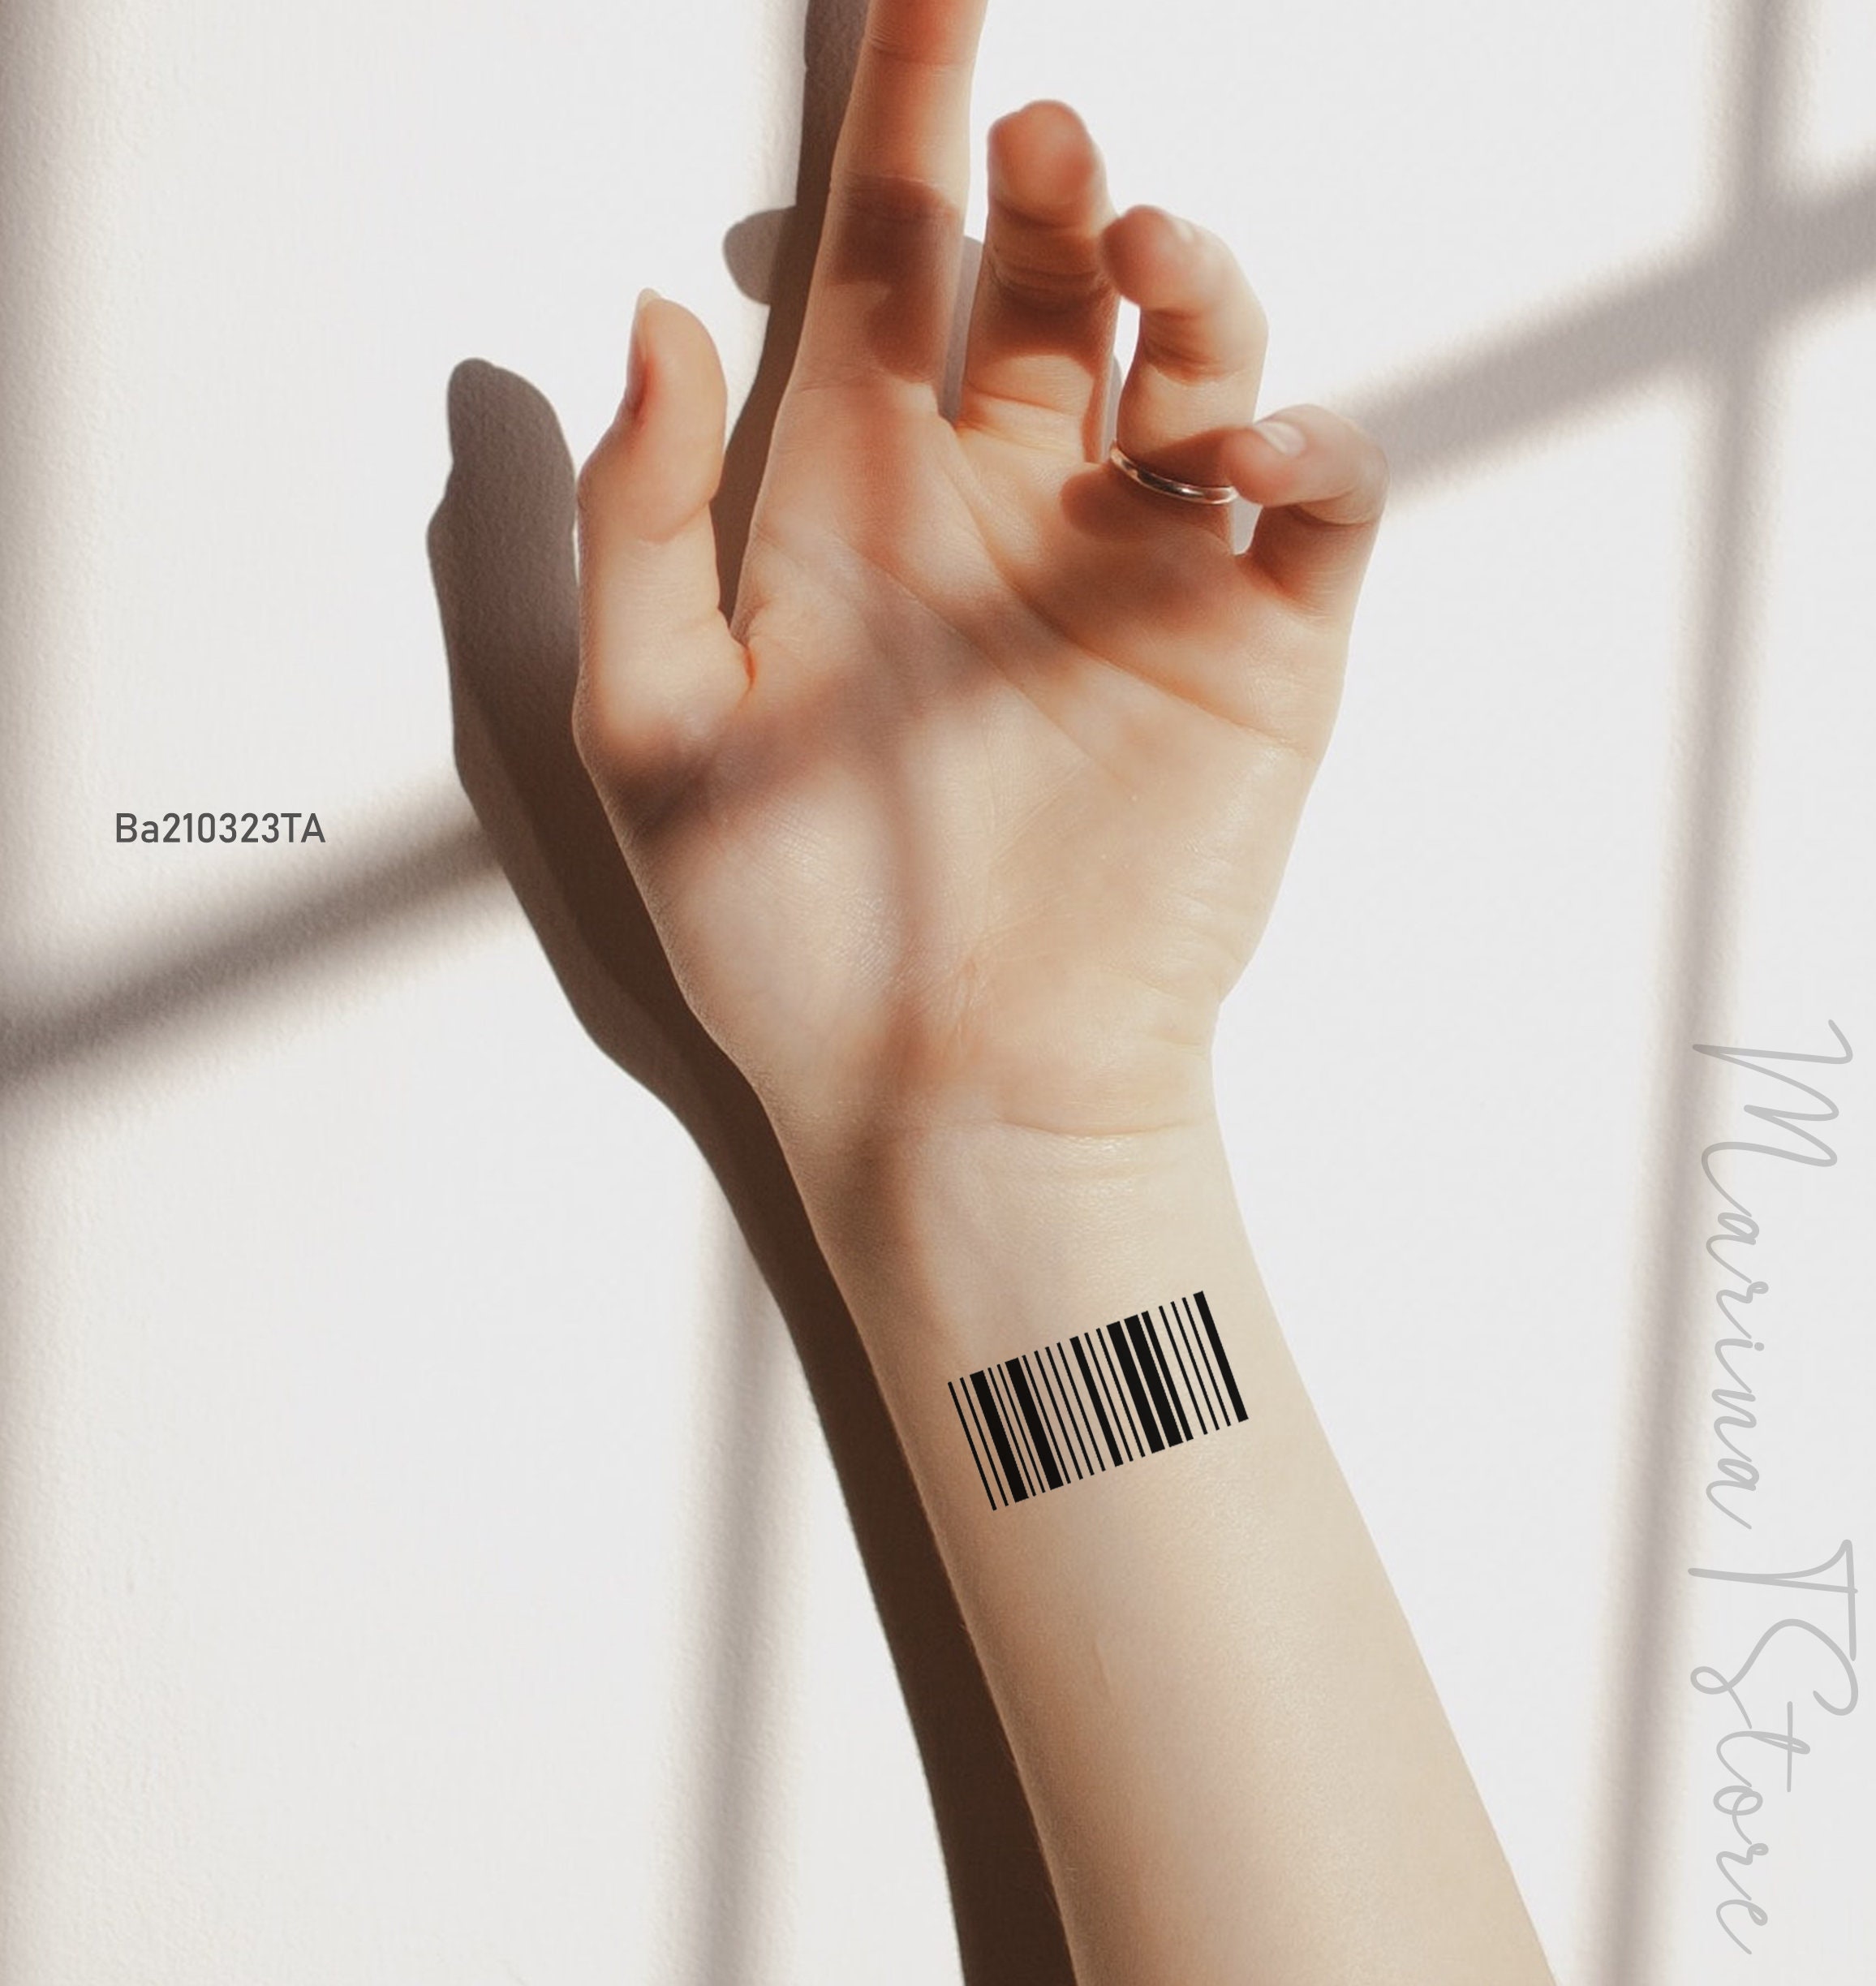 Barcode art, Barcode design, Barcode tattoopinterest, his barcode tattoo HD  phone wallpaper | Pxfuel